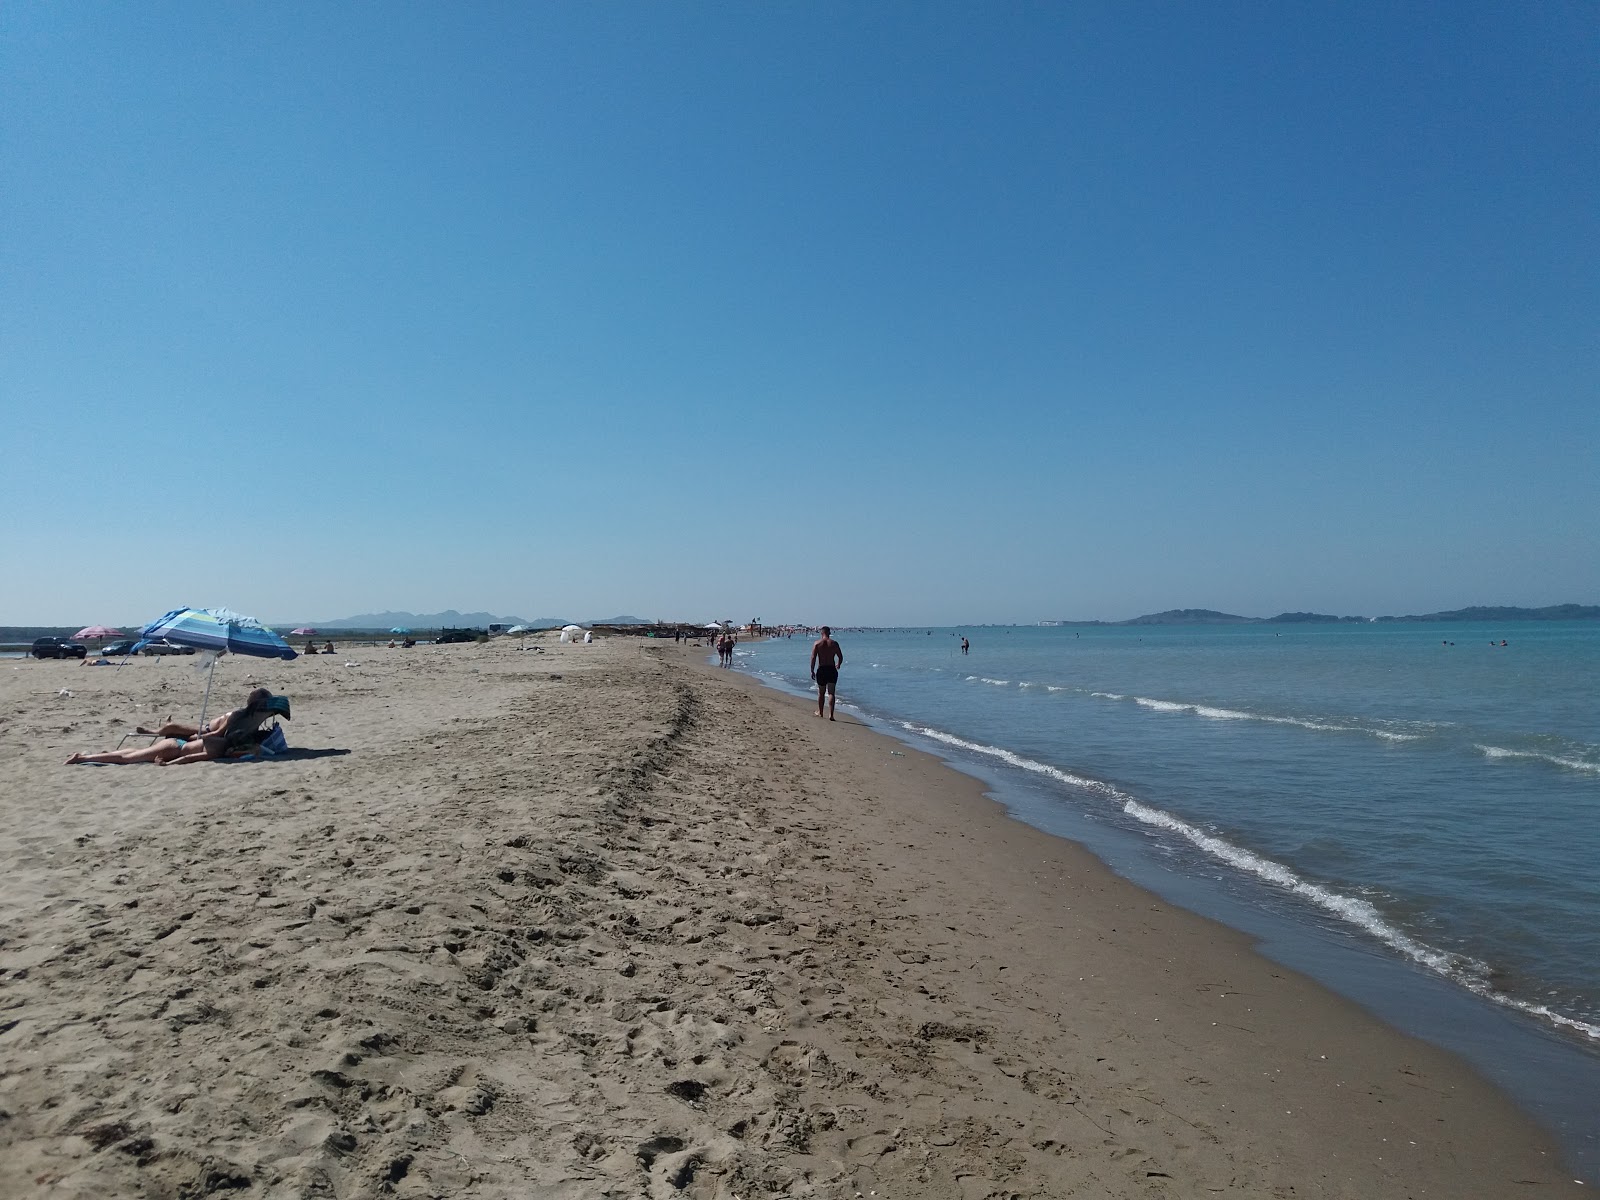 Photo de Cristal Rinia beach - endroit populaire parmi les connaisseurs de la détente